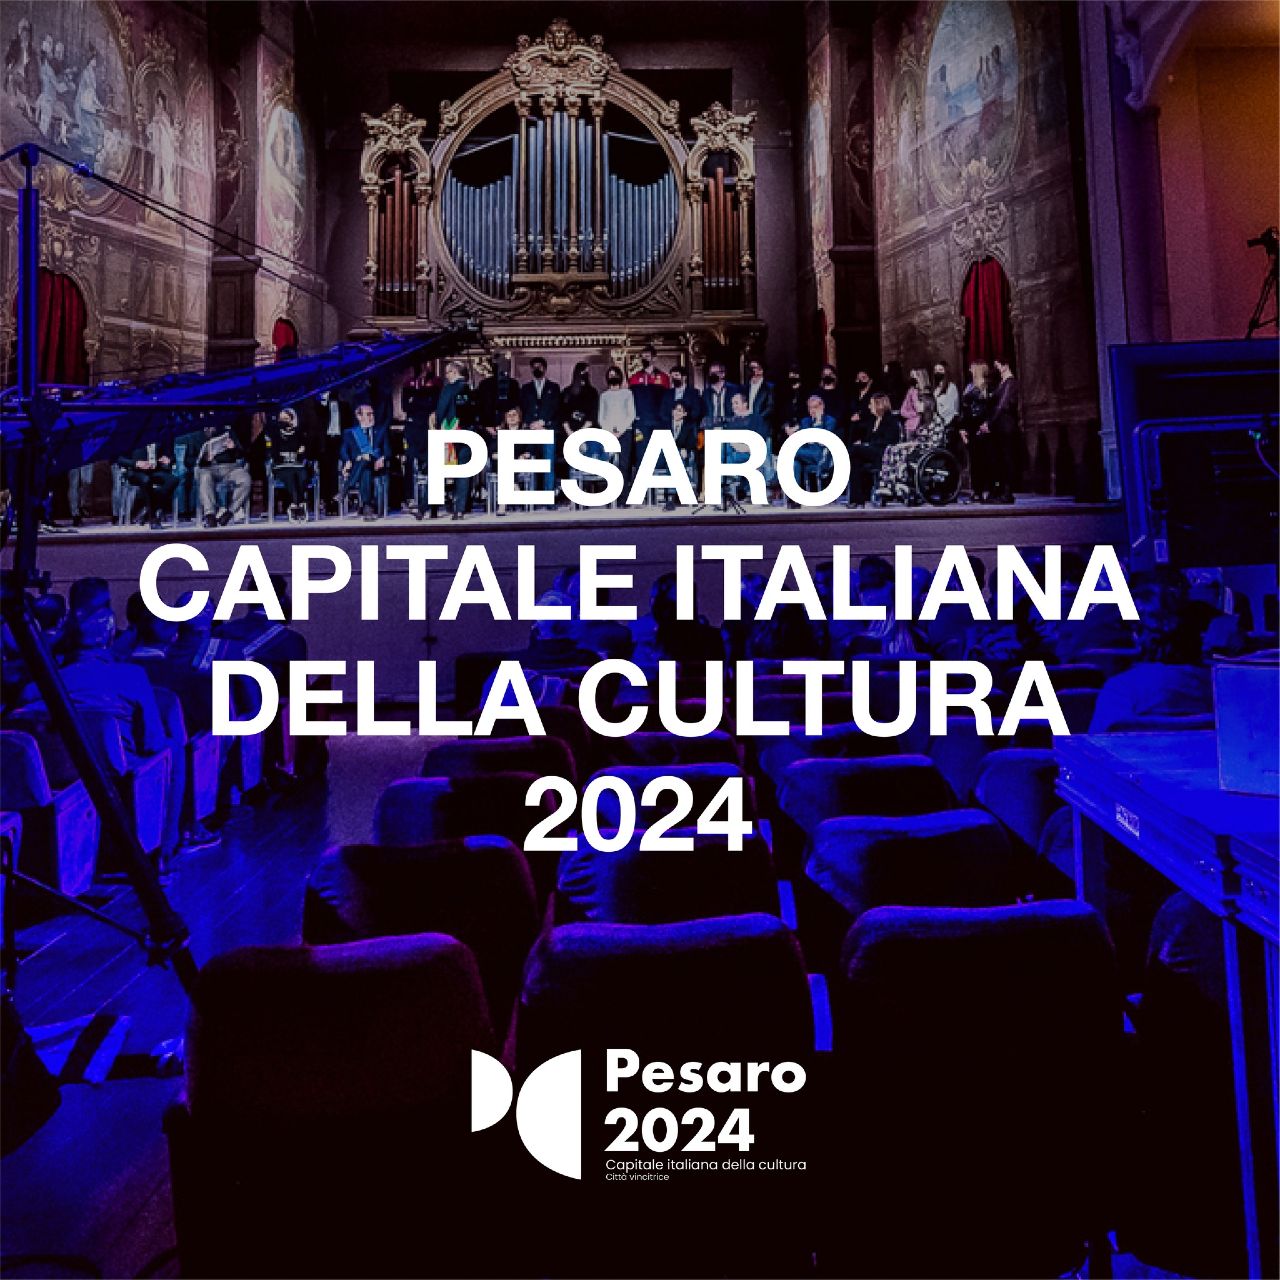 Pesaro, Capitale Italiana della Cultura 2024